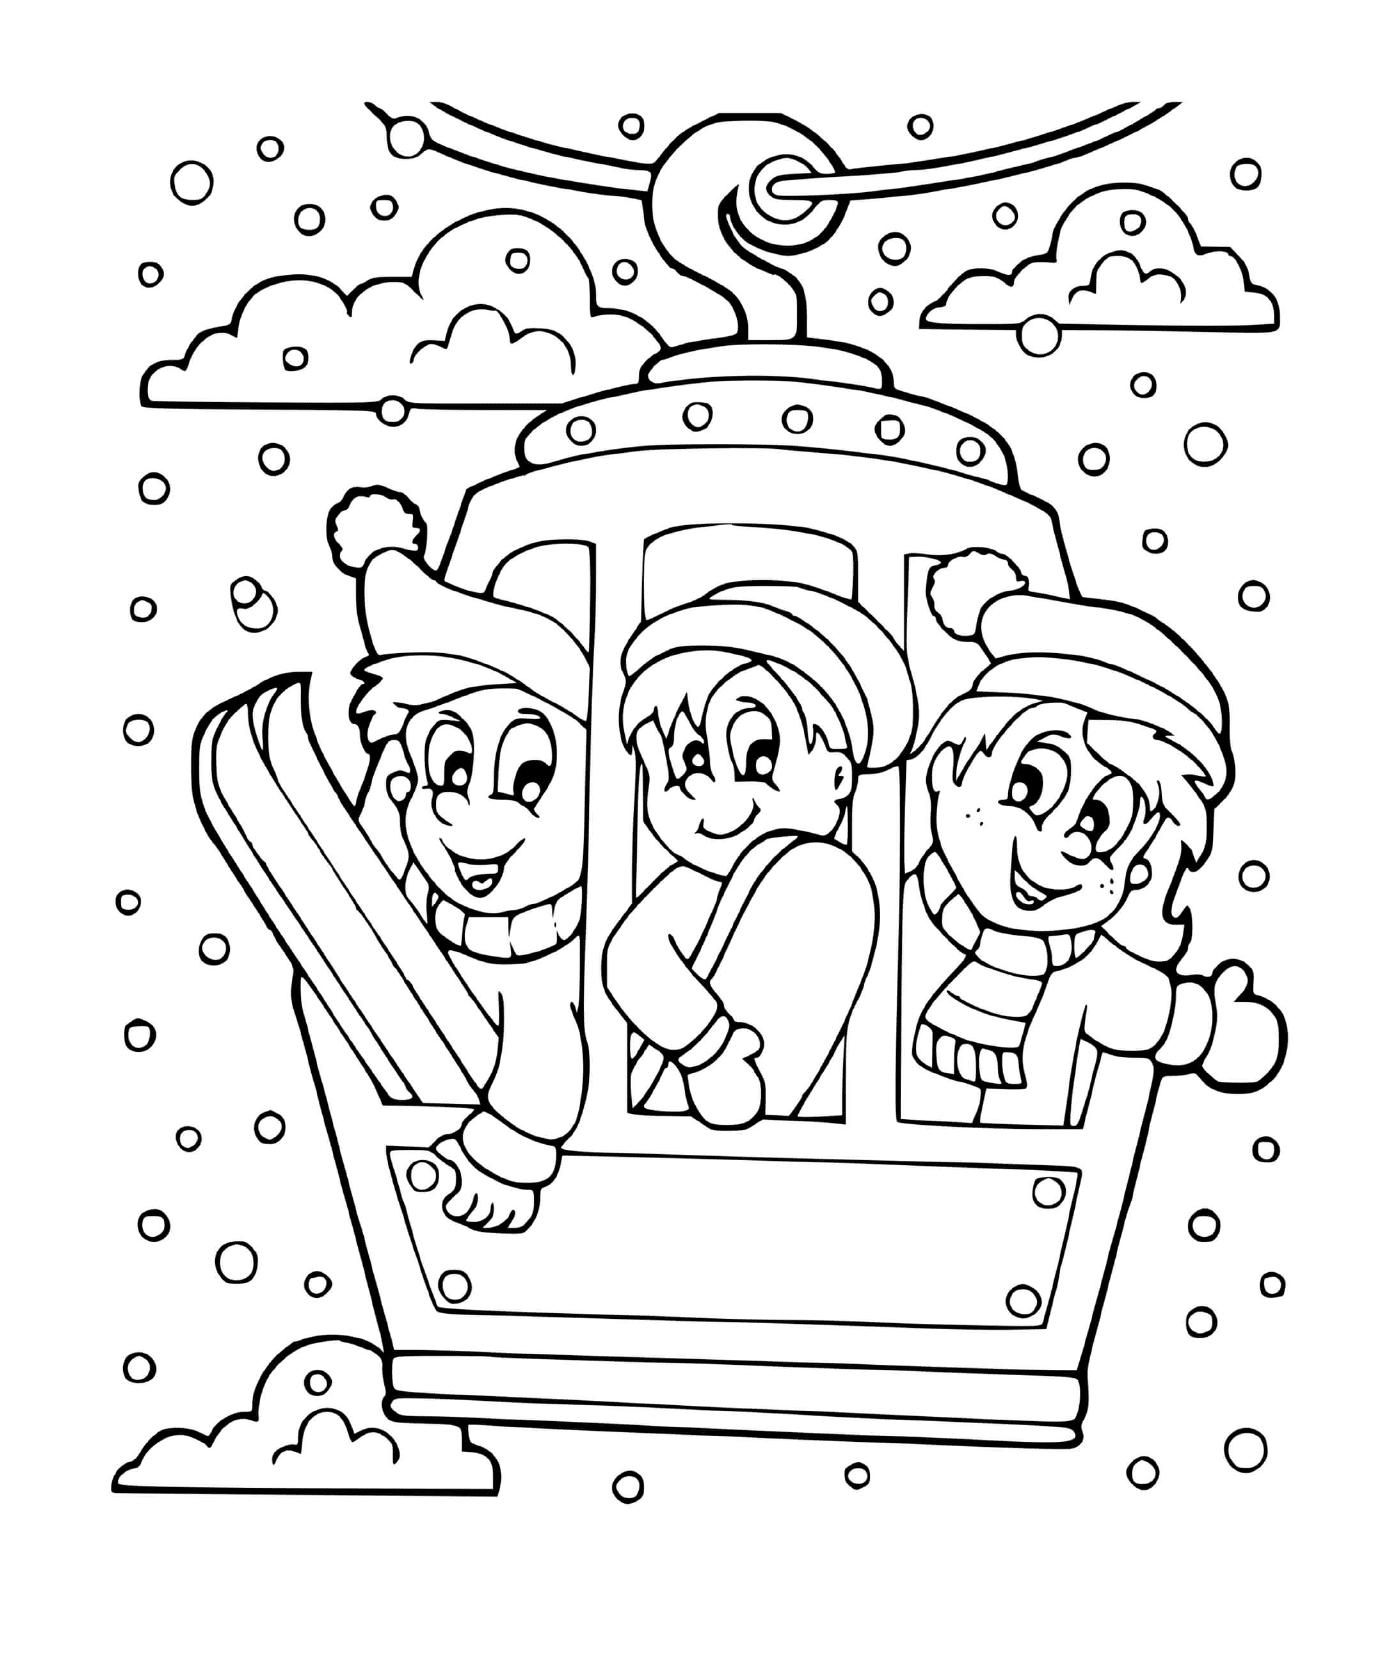  Amigos juegan un deporte de invierno 